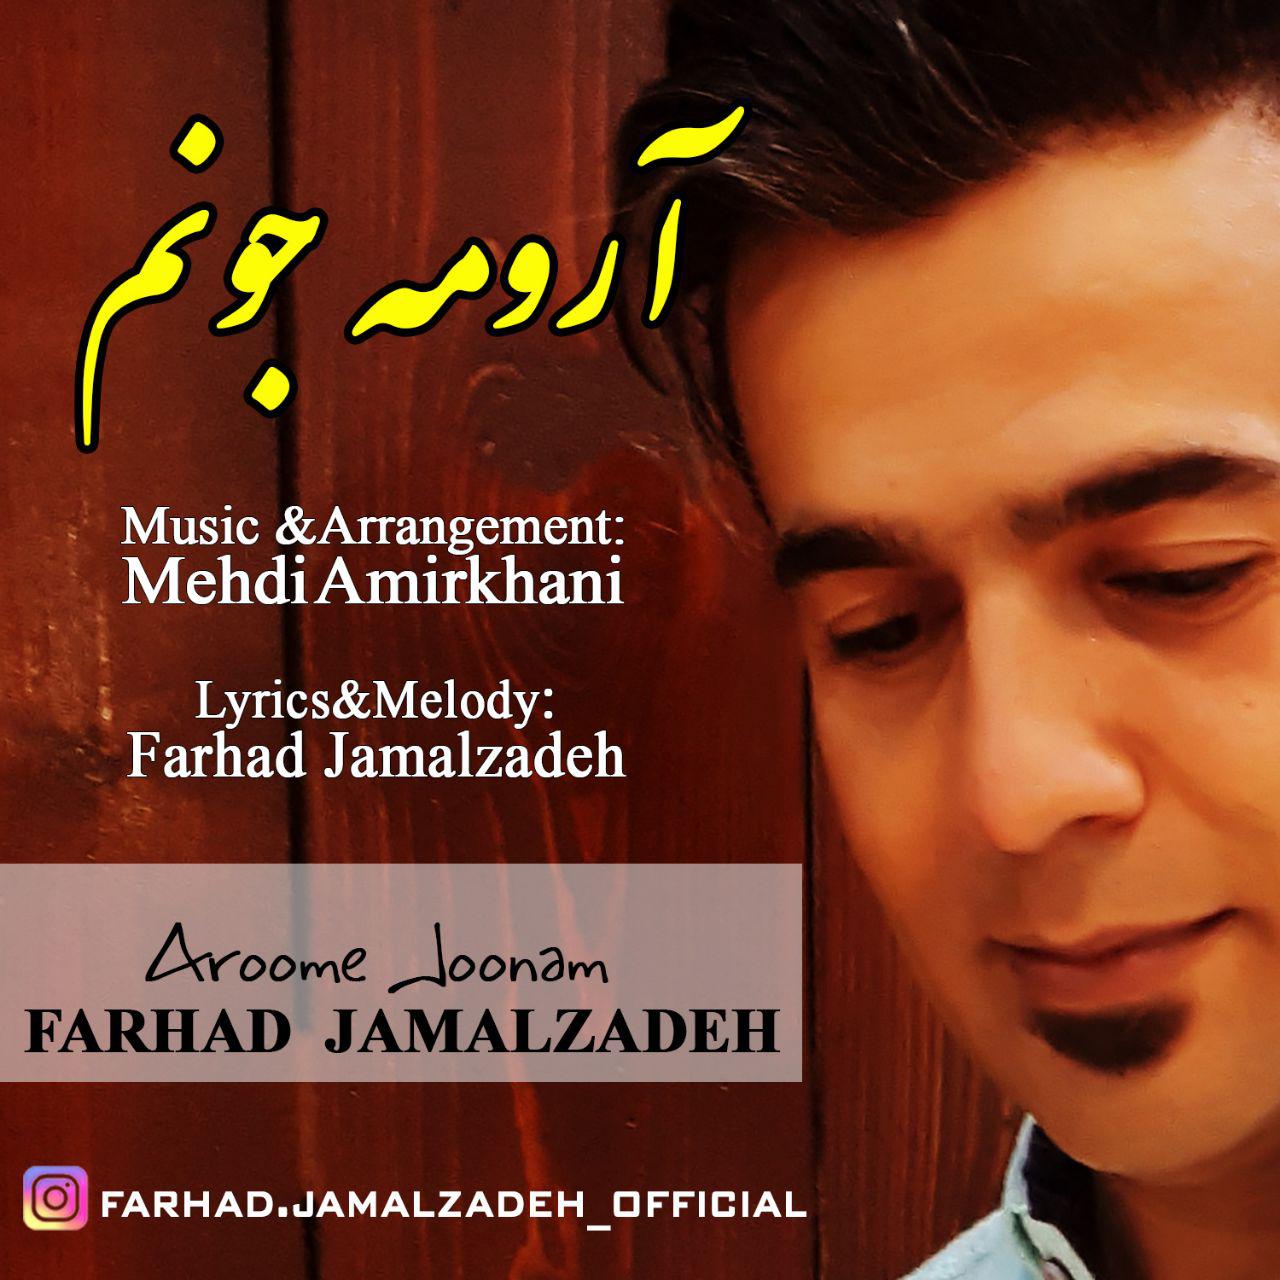 http://dl.face1music.net/radio97/05/17/Farhad%20Jamalzadeh-Aroome%20Joonam.jpg